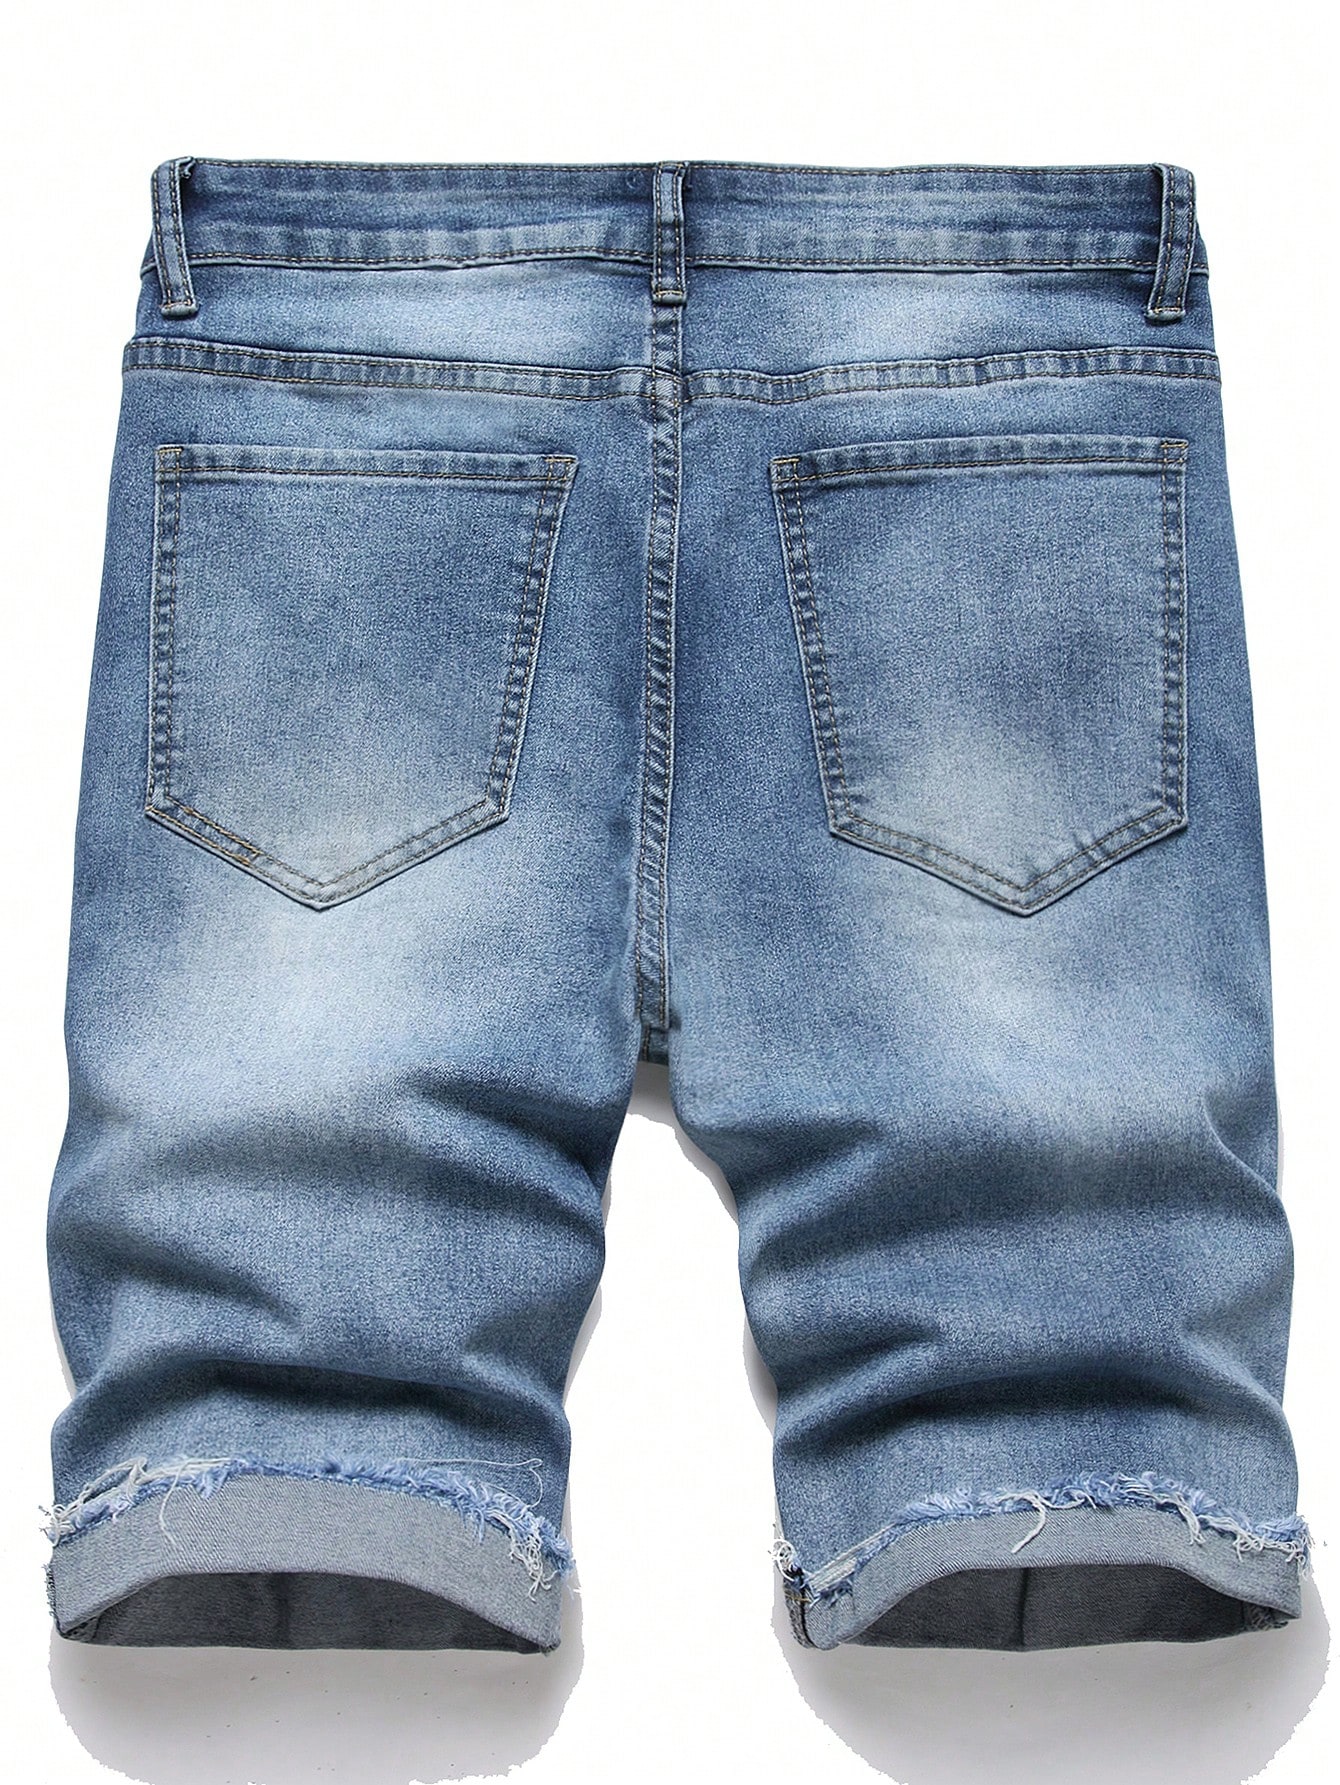 Мужские потертые джинсовые шорты Manfinity Hypemode, средняя стирка